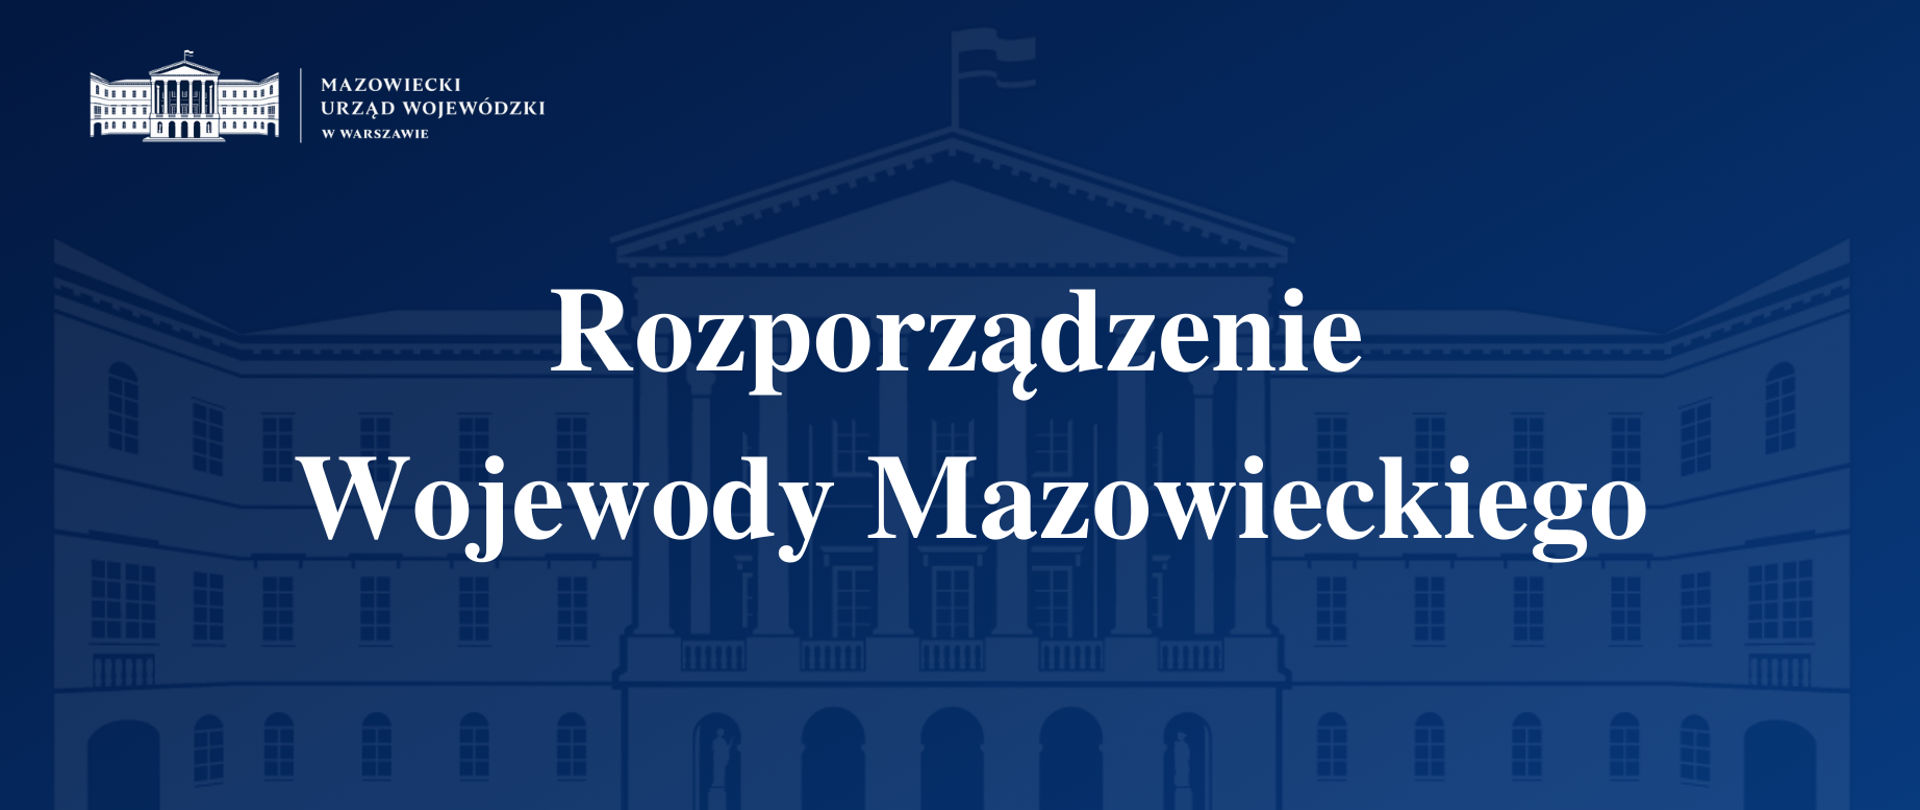 Zakaz przewozu towarów niebezpiecznych i ruchu pojazdów nienormatywnych
w Warszawie - rozporządzenie porządkowe Wojewody Mazowieckiego
